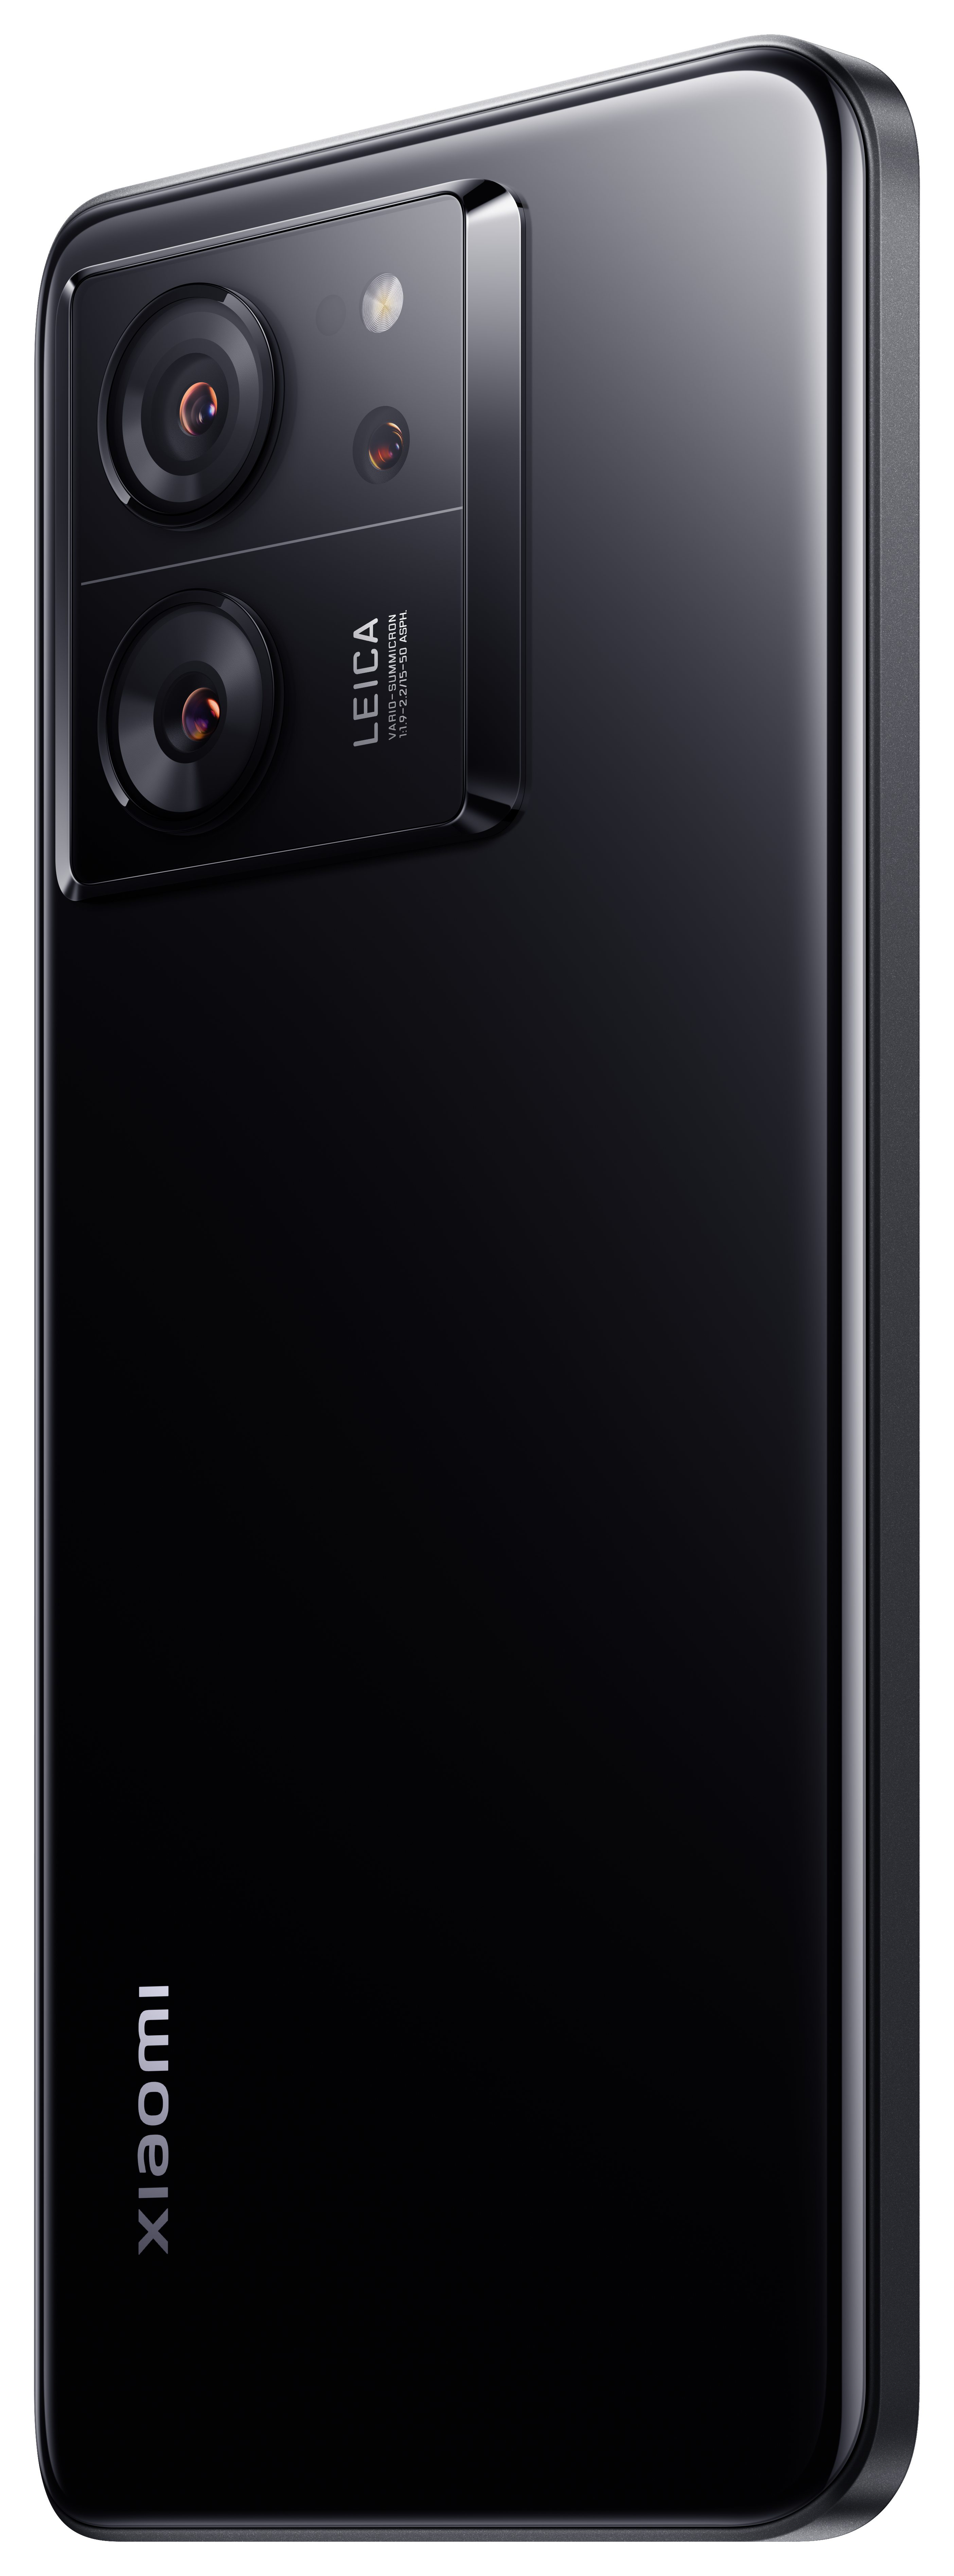 XIAOMI 13T 256 GB Black Dual SIM